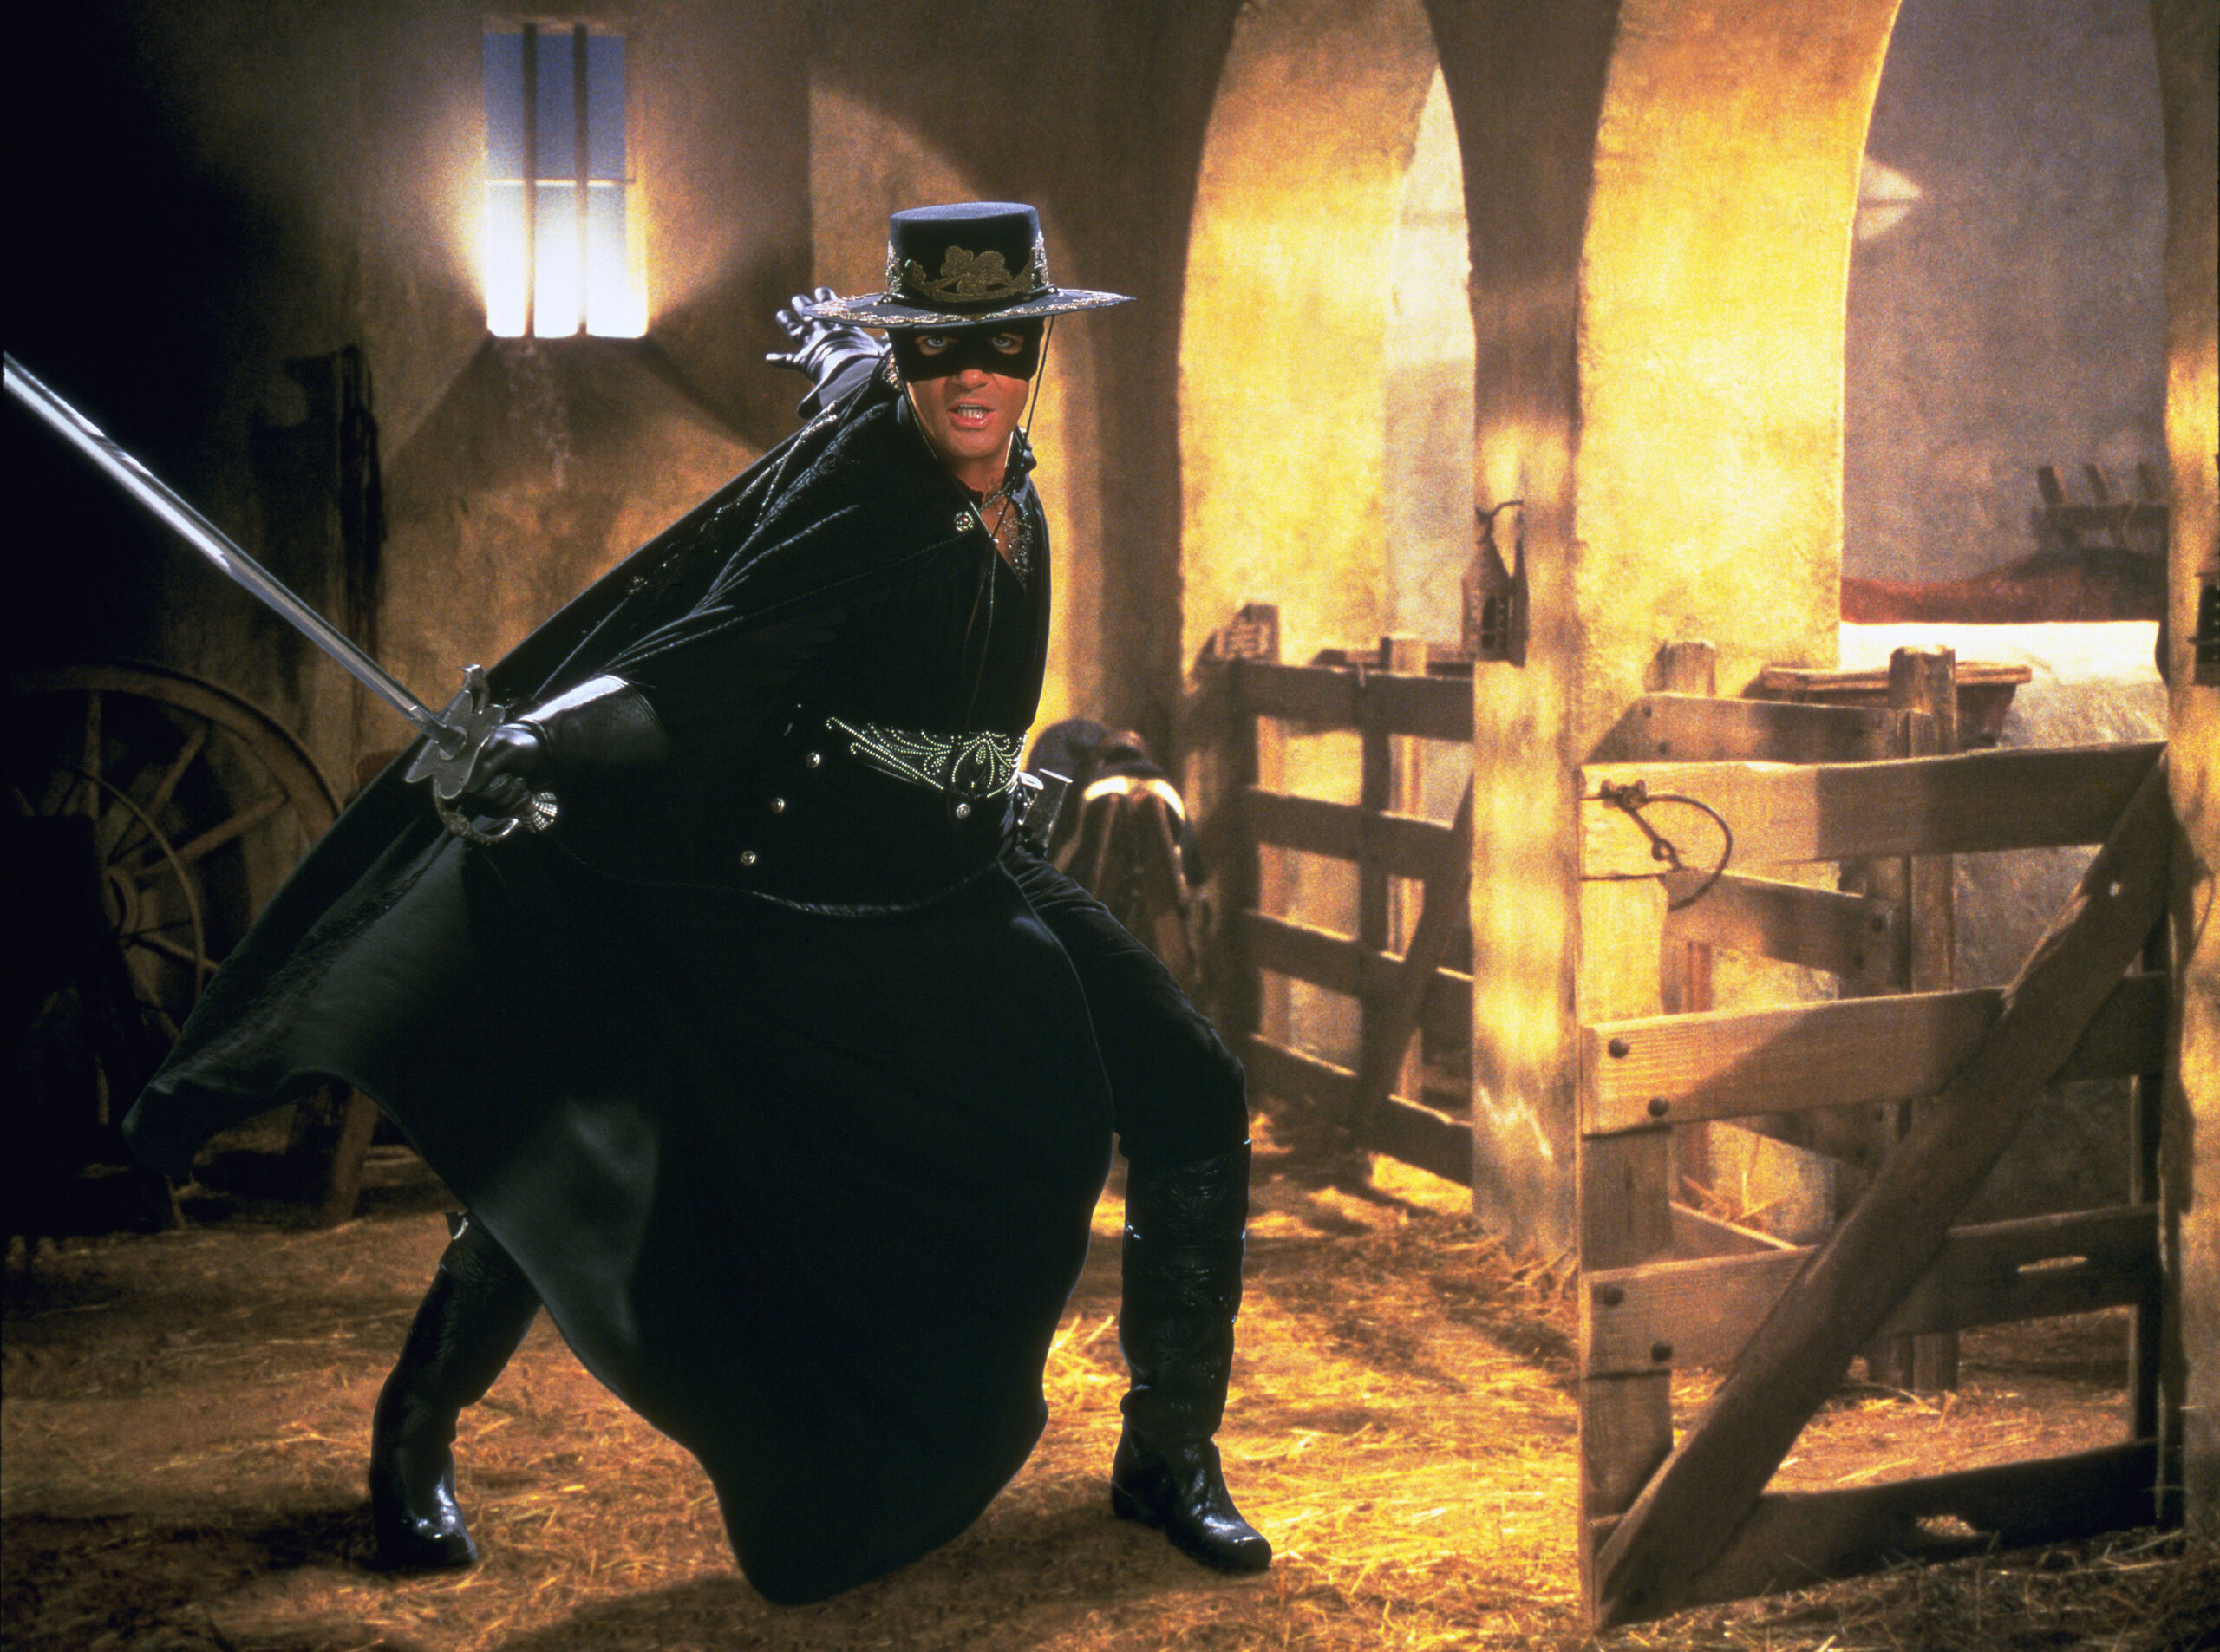 Cena do filme A Máscara do Zorro. Na imagem, o protagonista, Alejandro Murrieta (Antonio Banderas), já atuando como o Zorro, aparece em uma cena de ação com espada rapieira. Murrieta é um homem de pele branca e cabelos e olhos escuros. Ele veste um figurino completamente preto que é acompanhado de luvas e uma capa que se estende até a sola da bota. Ao fundo, o cenário é um celeiro iluminado por cores quentes.